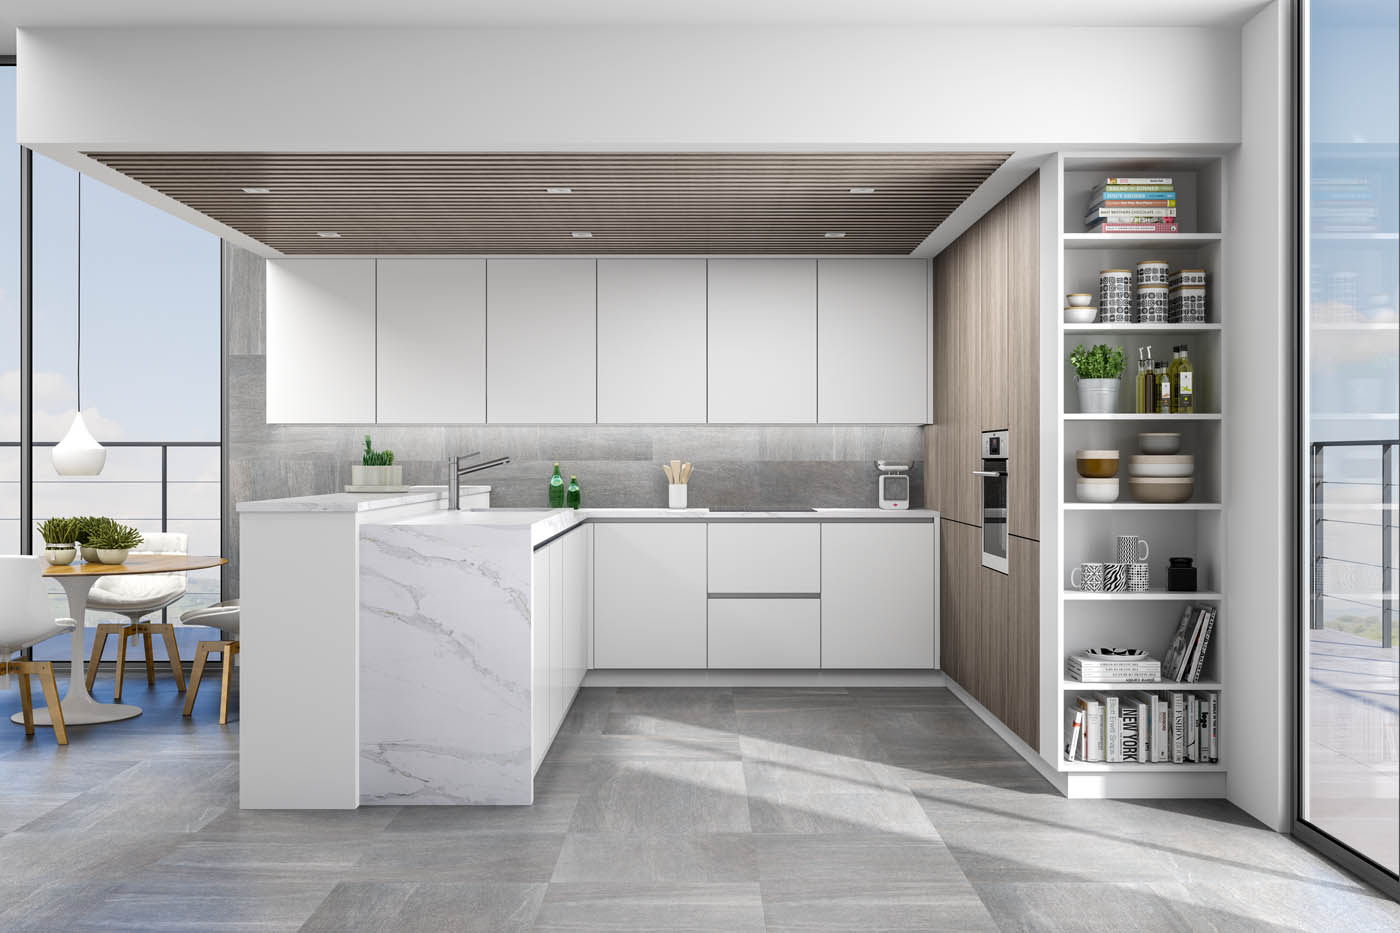 Imagen realizada con infografía 3D para la representación de una cocina de diseño y alta calidad